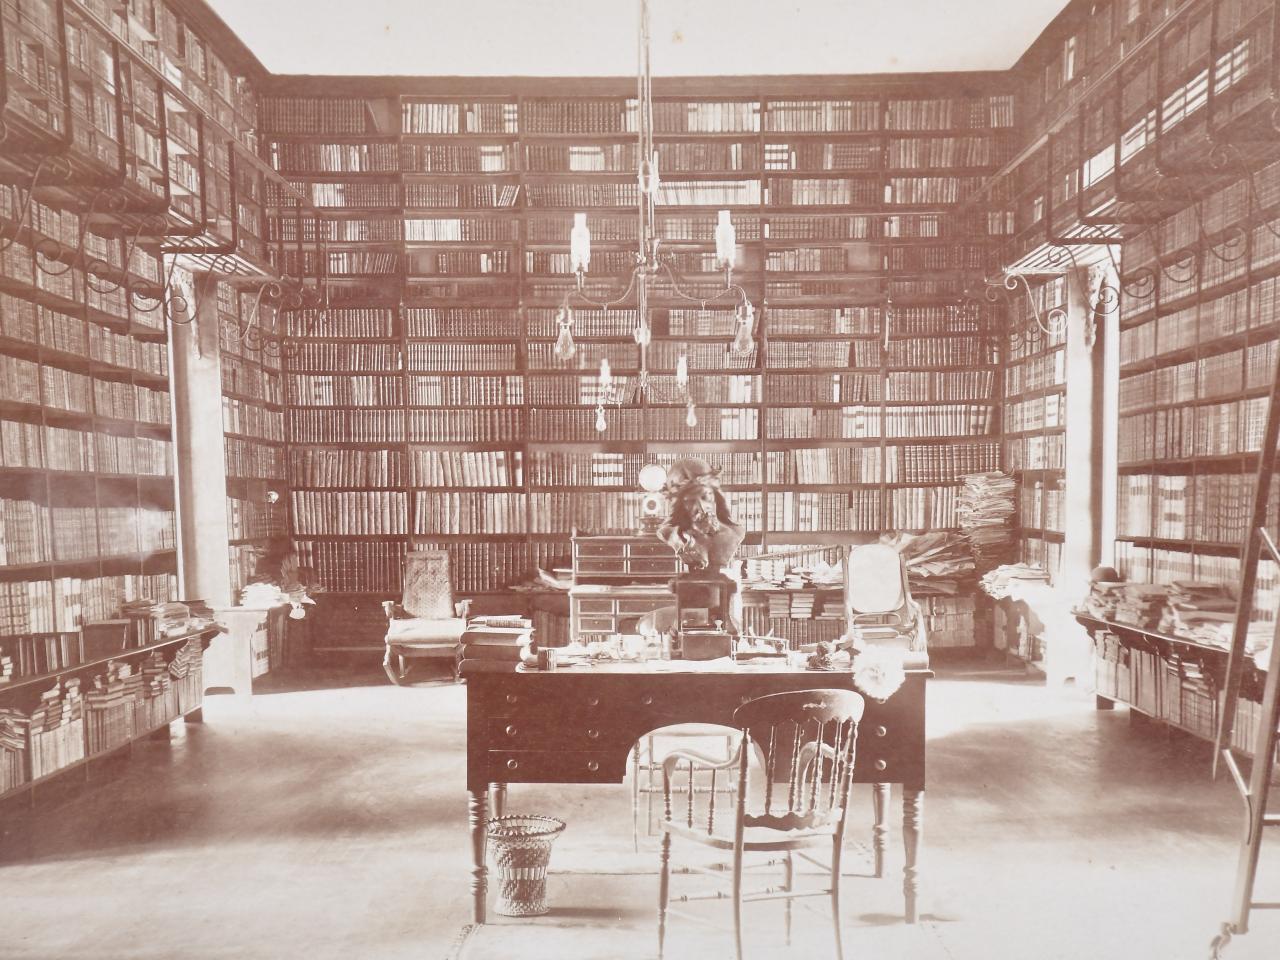 Fotografía antigua de la sala museal de la Biblioteca